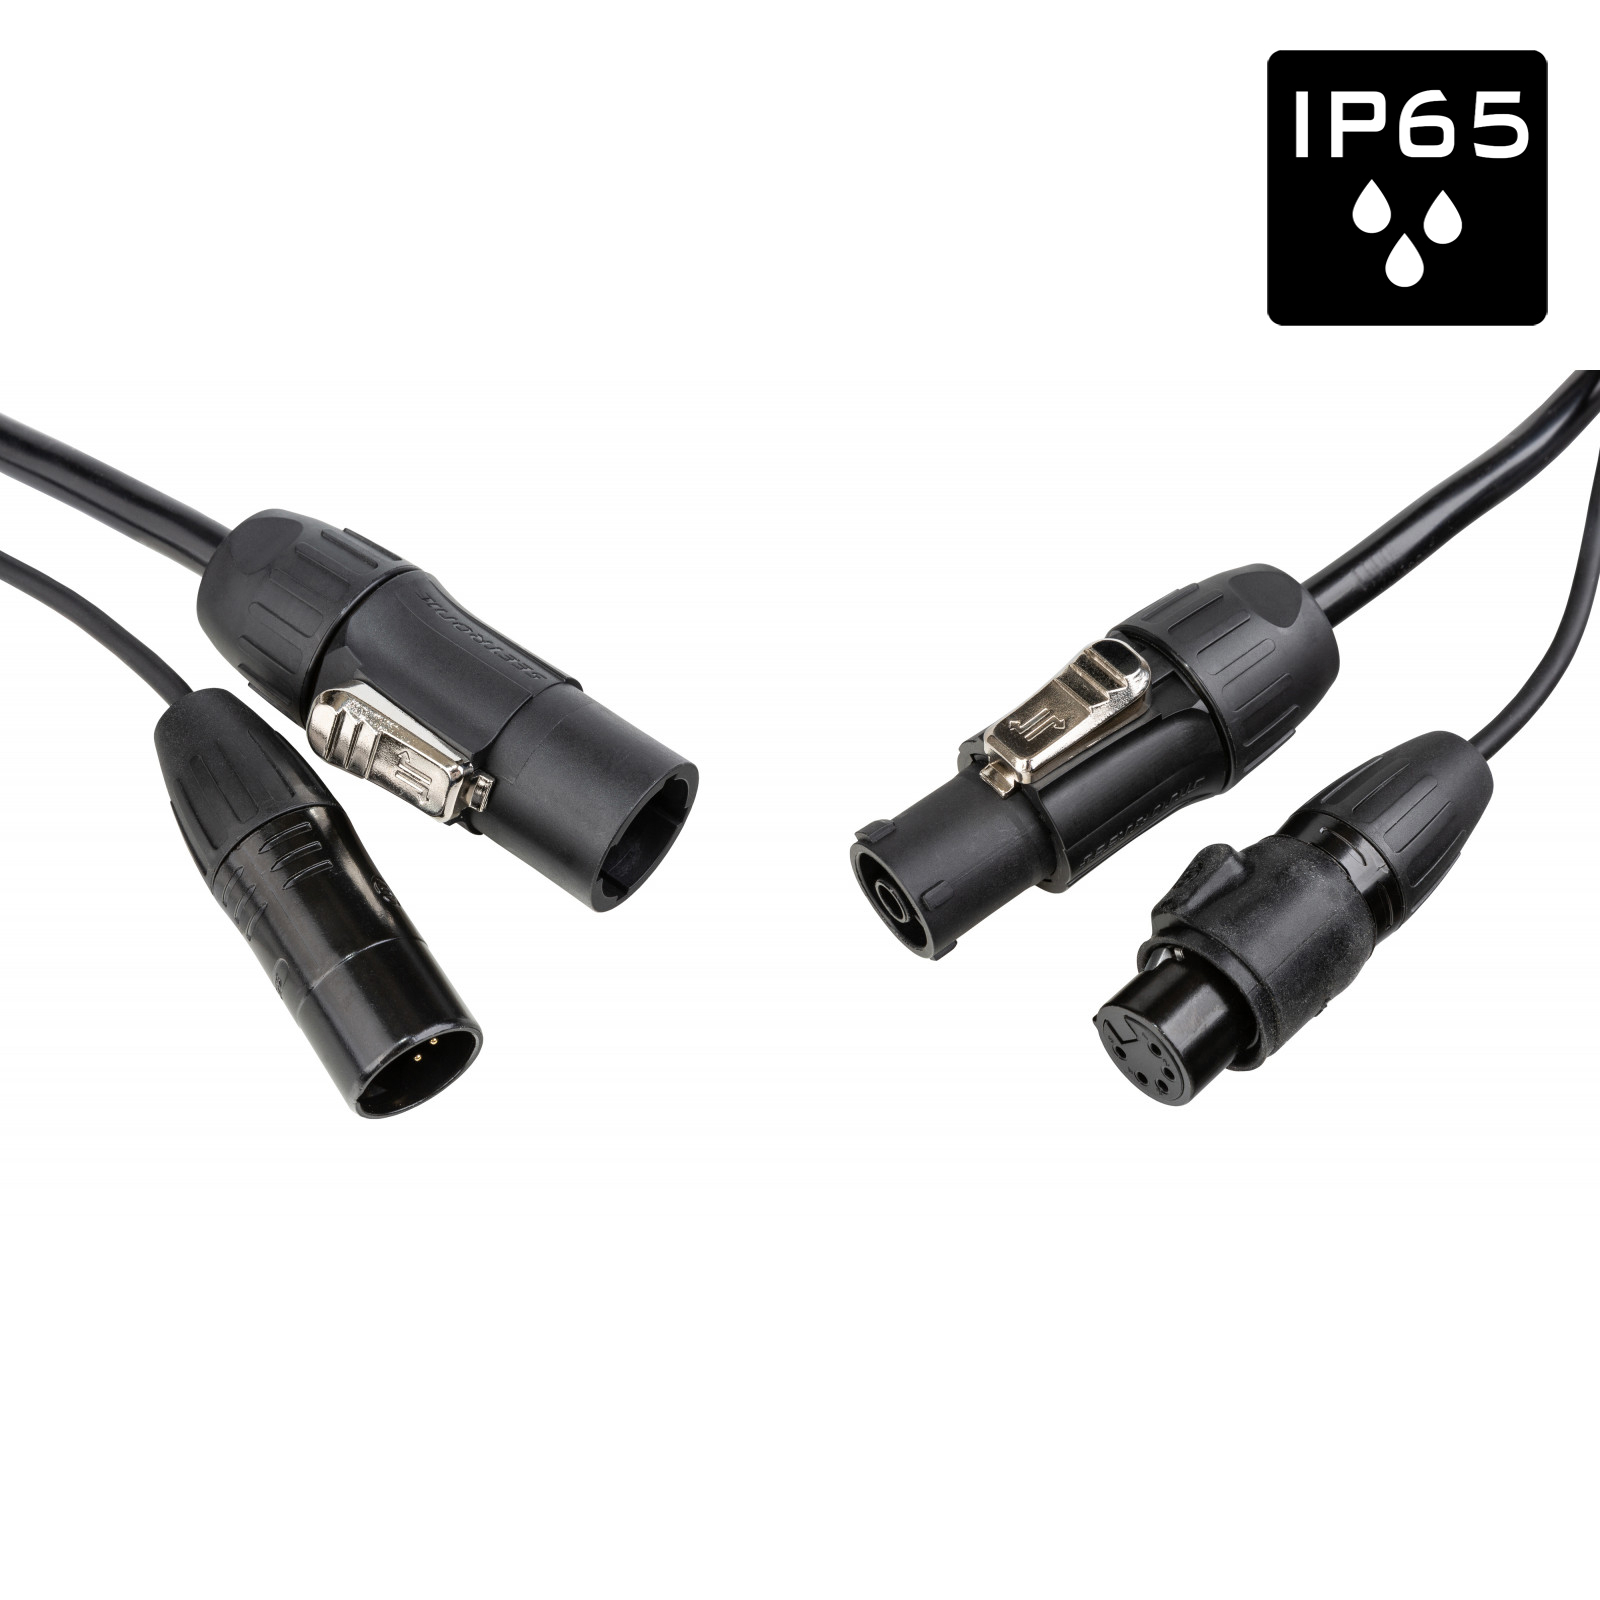 Câble IP65 avec connecteurs Seetronic XLR 5p et compatibles True1 - Longueur 1,5m